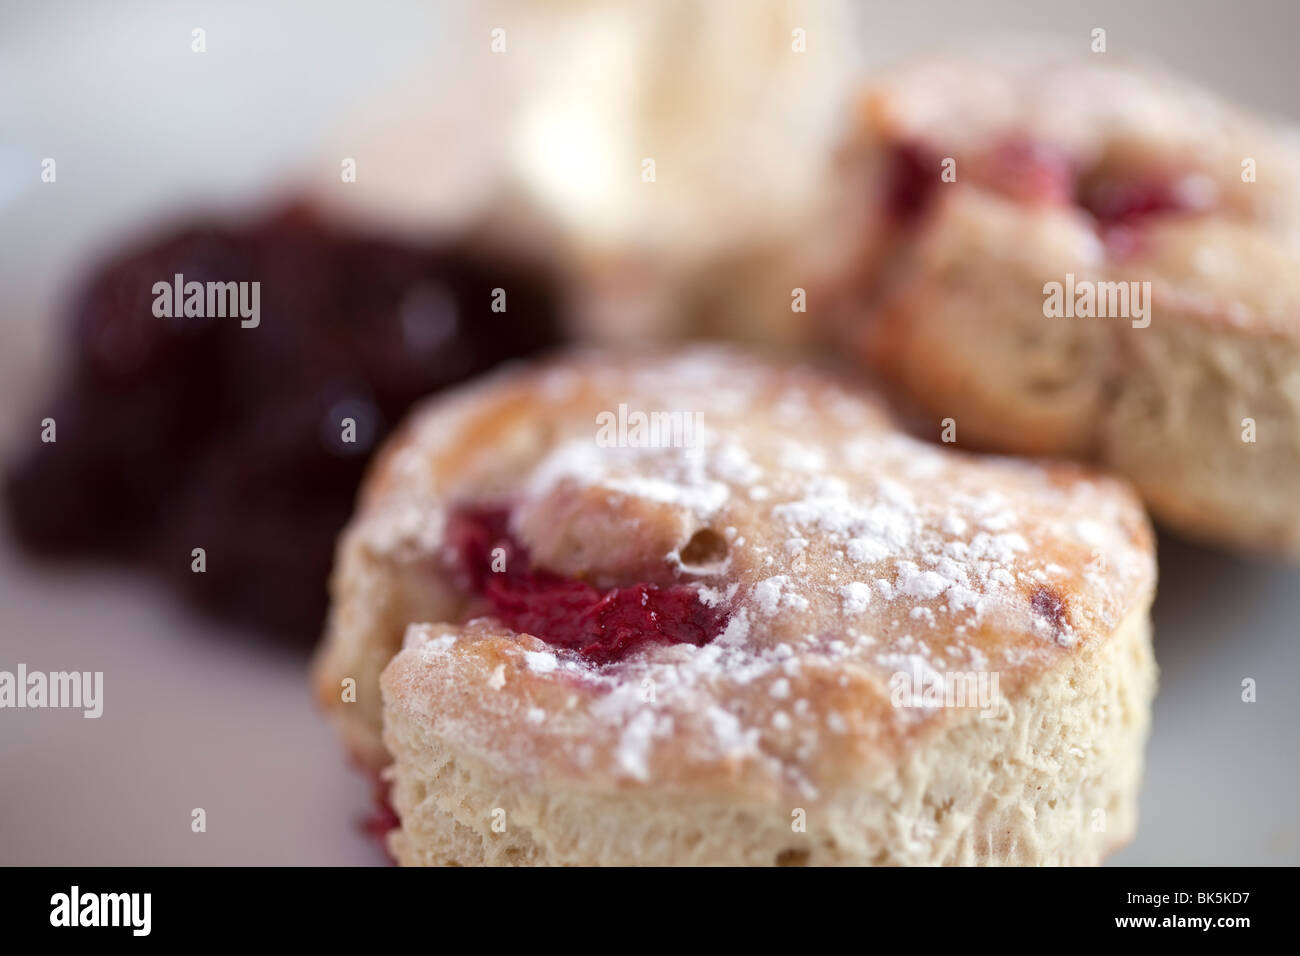 Des scones aux fraises et de la confiture de fraise close up montrant la texture de la nourriture sur une table Banque D'Images